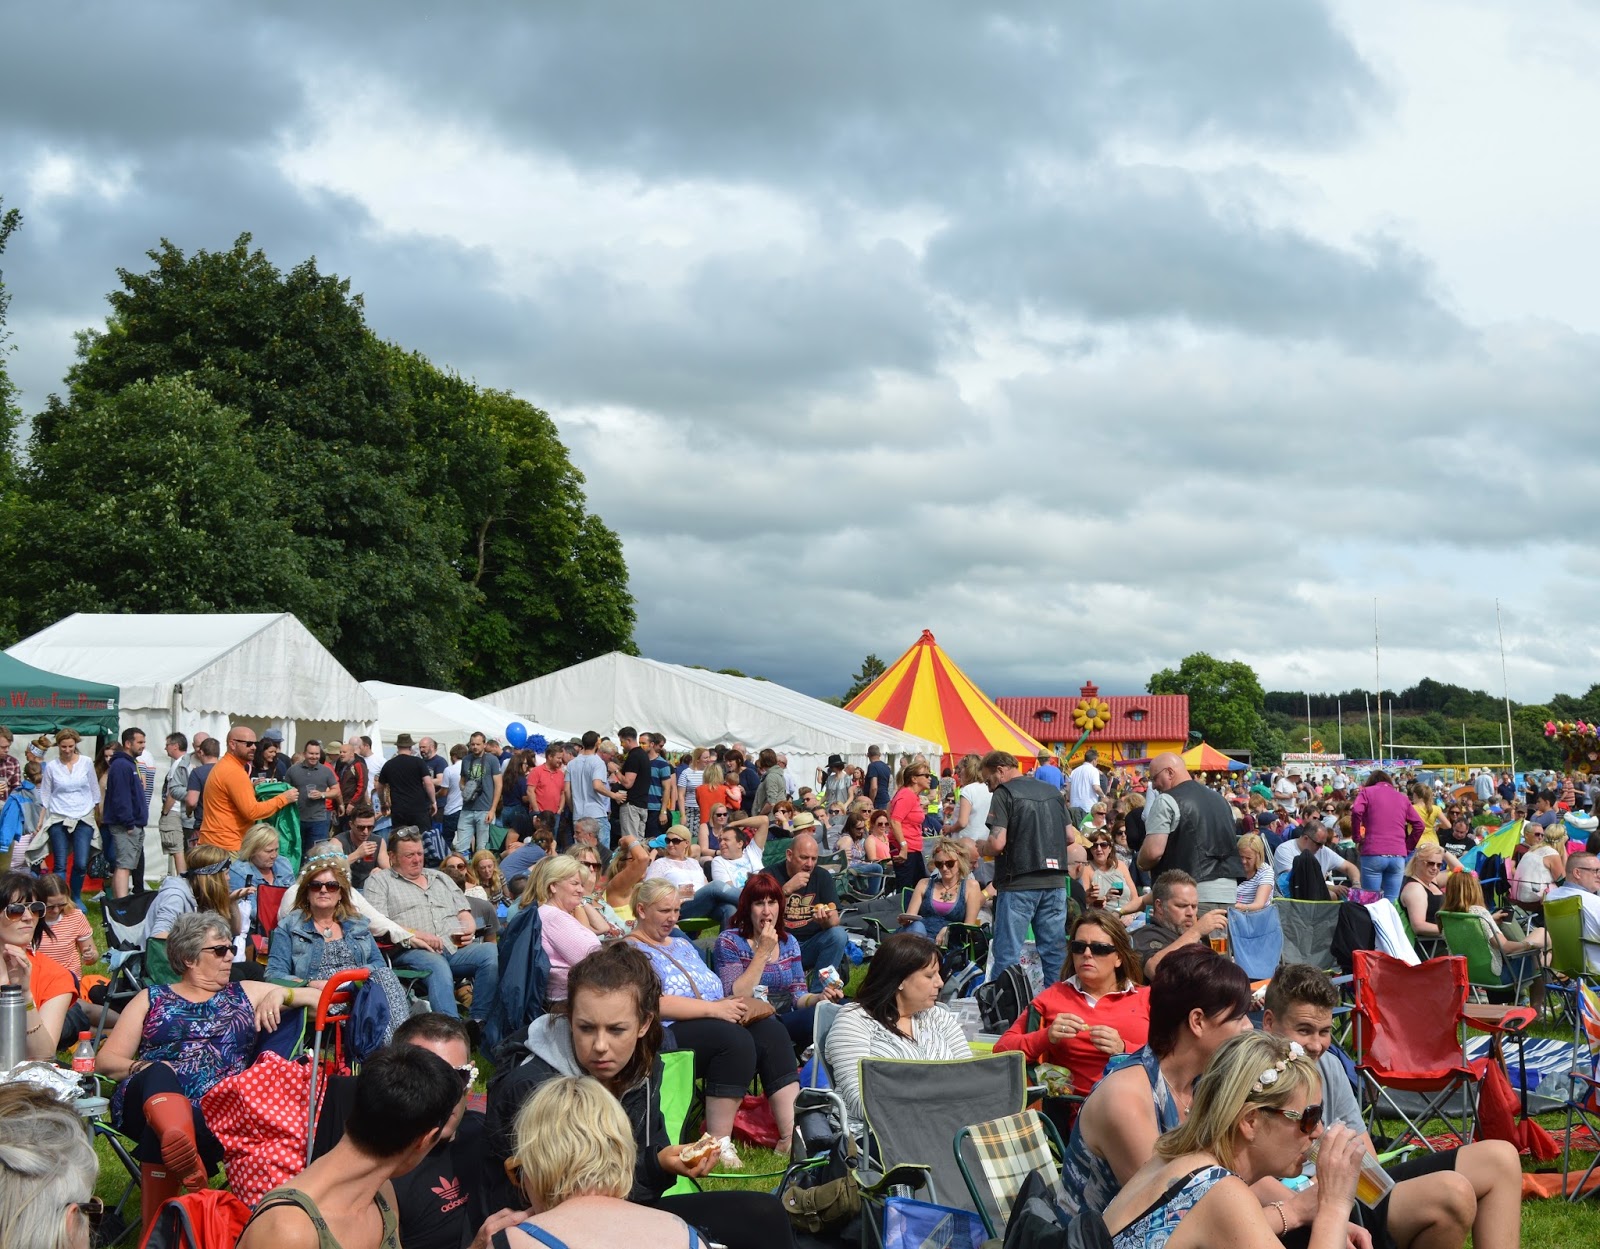 Corbridge Festival 2016 - A Review